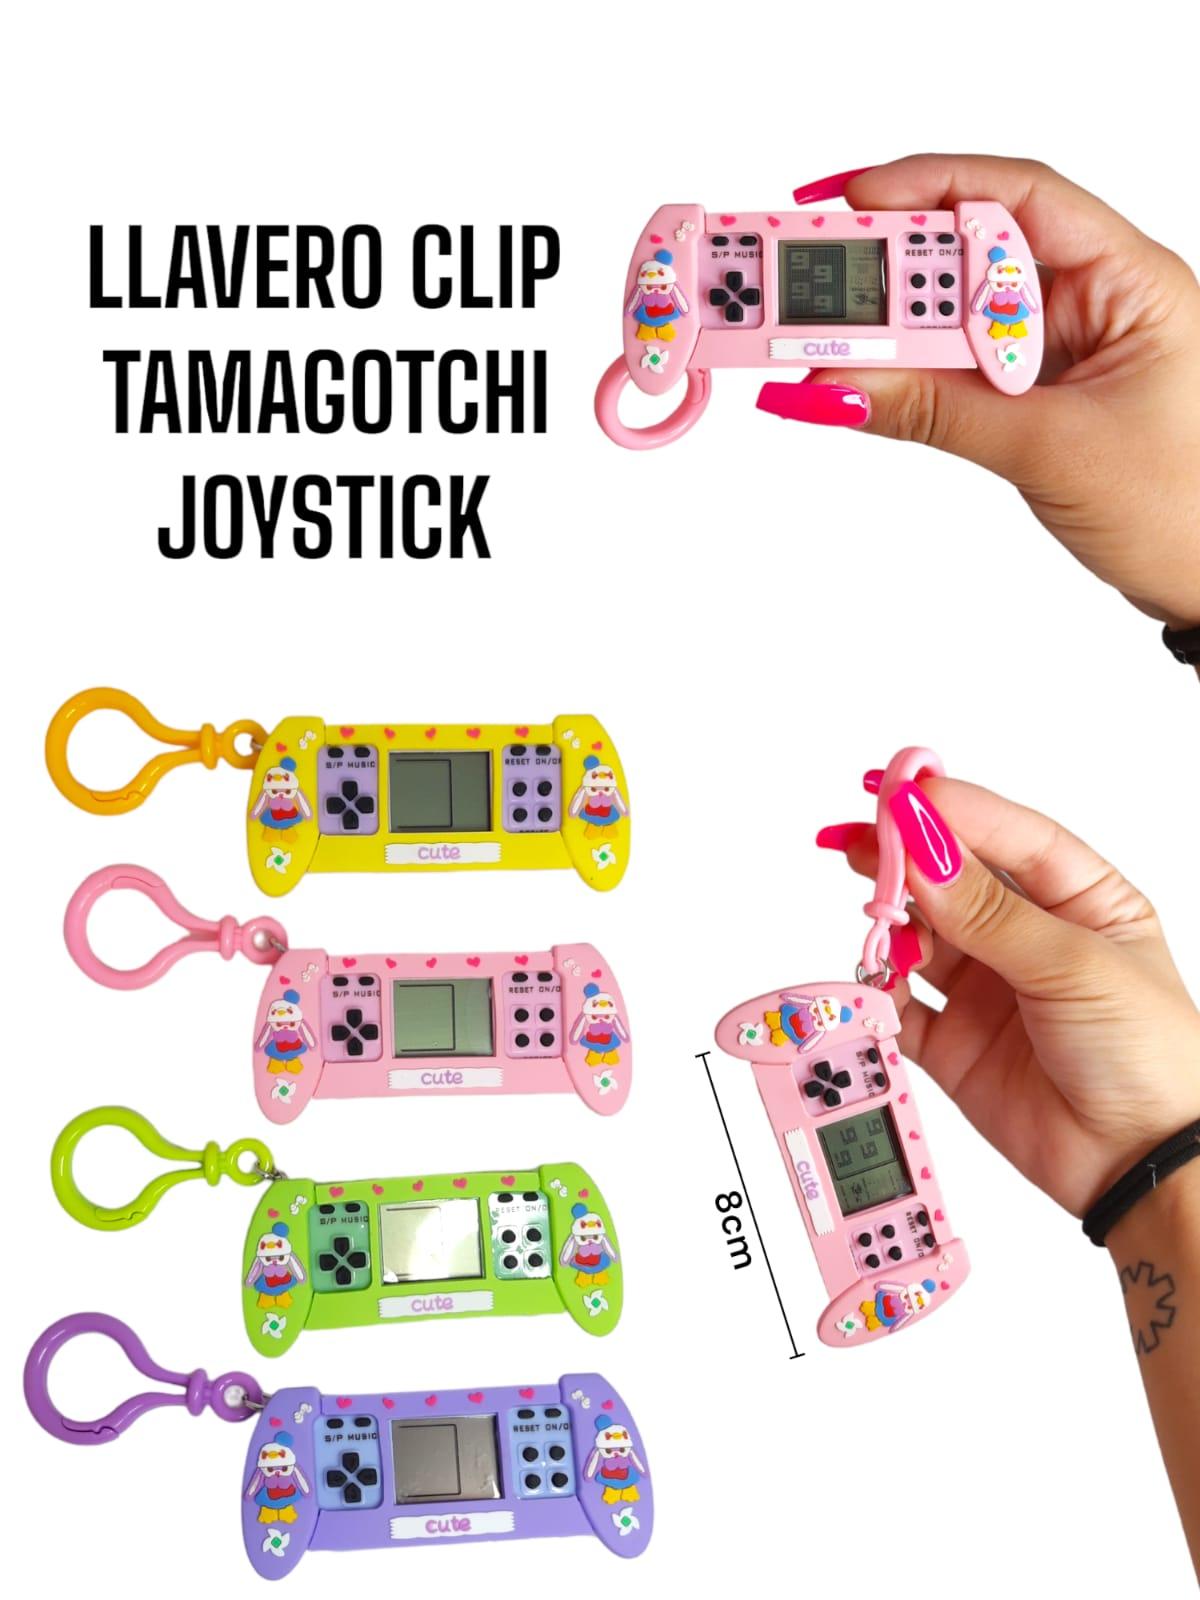 Llavero Premium Clip Joystick Tamagotchi